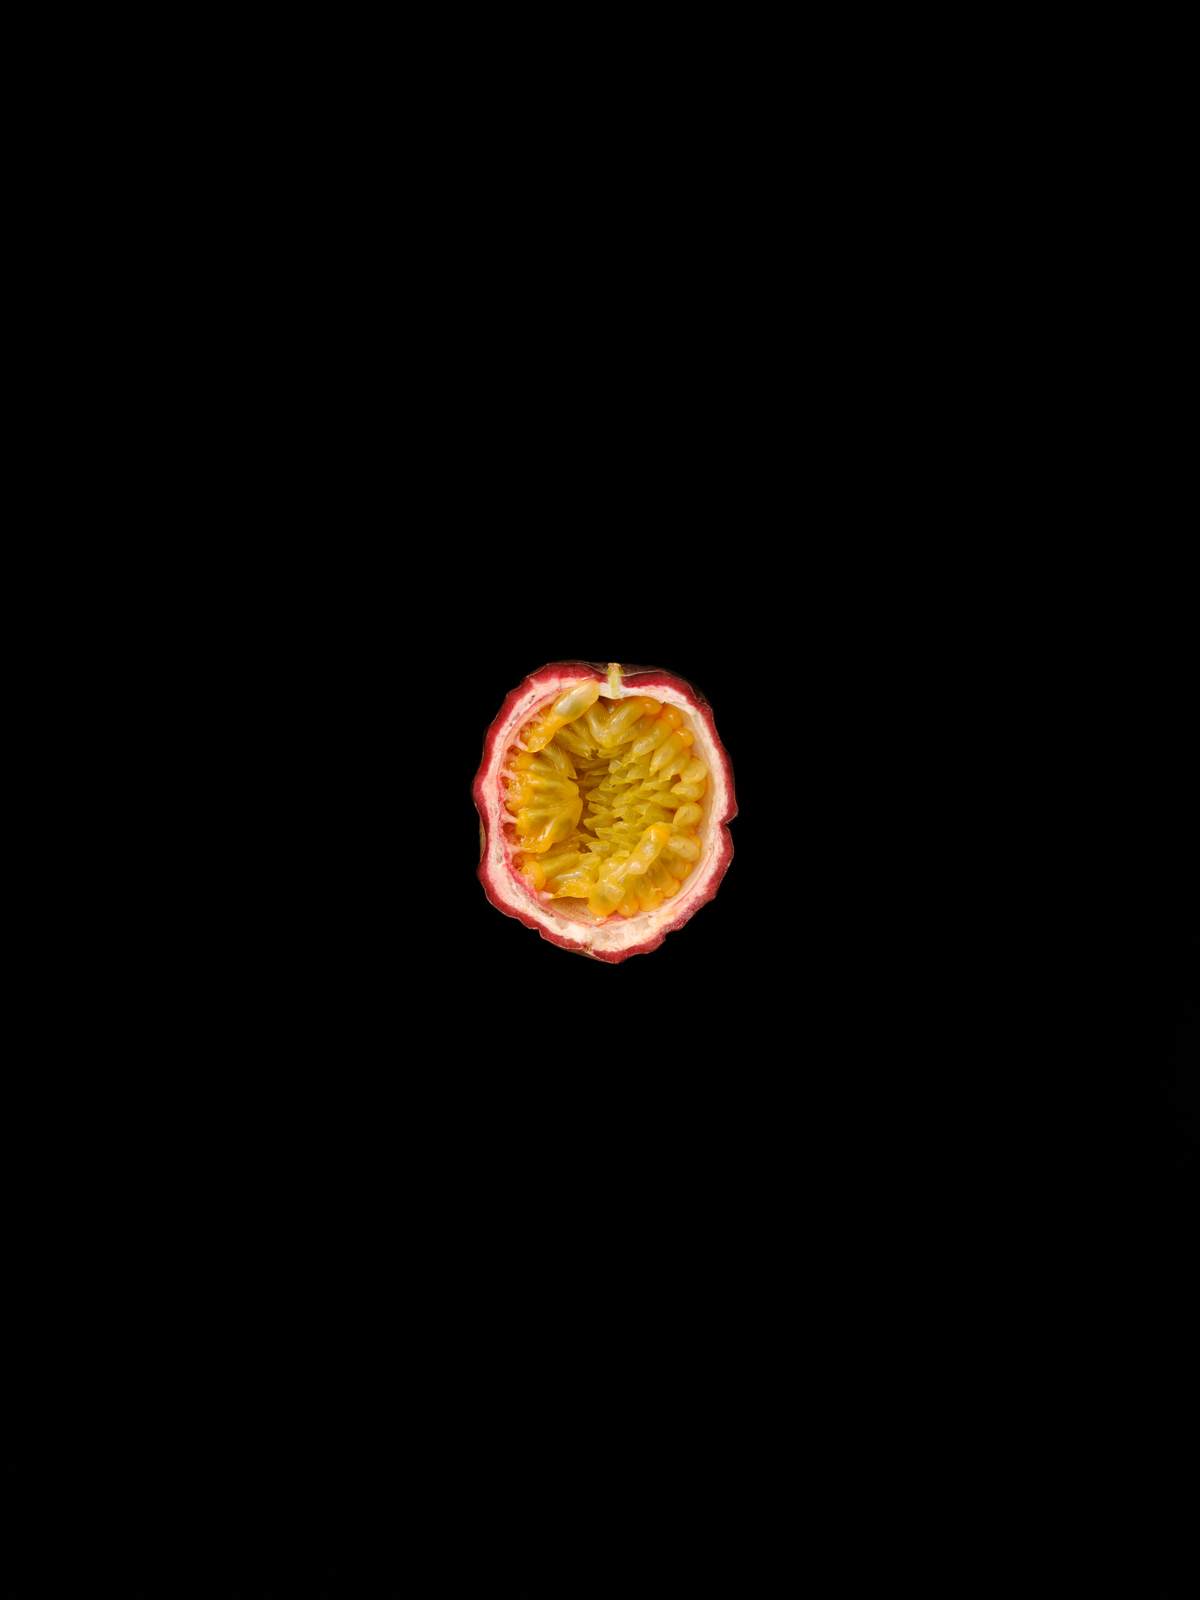 Sweet Sour - Passionsfrucht modernes Stillleben limitiertes Foto Kunst von Thomas Sixt